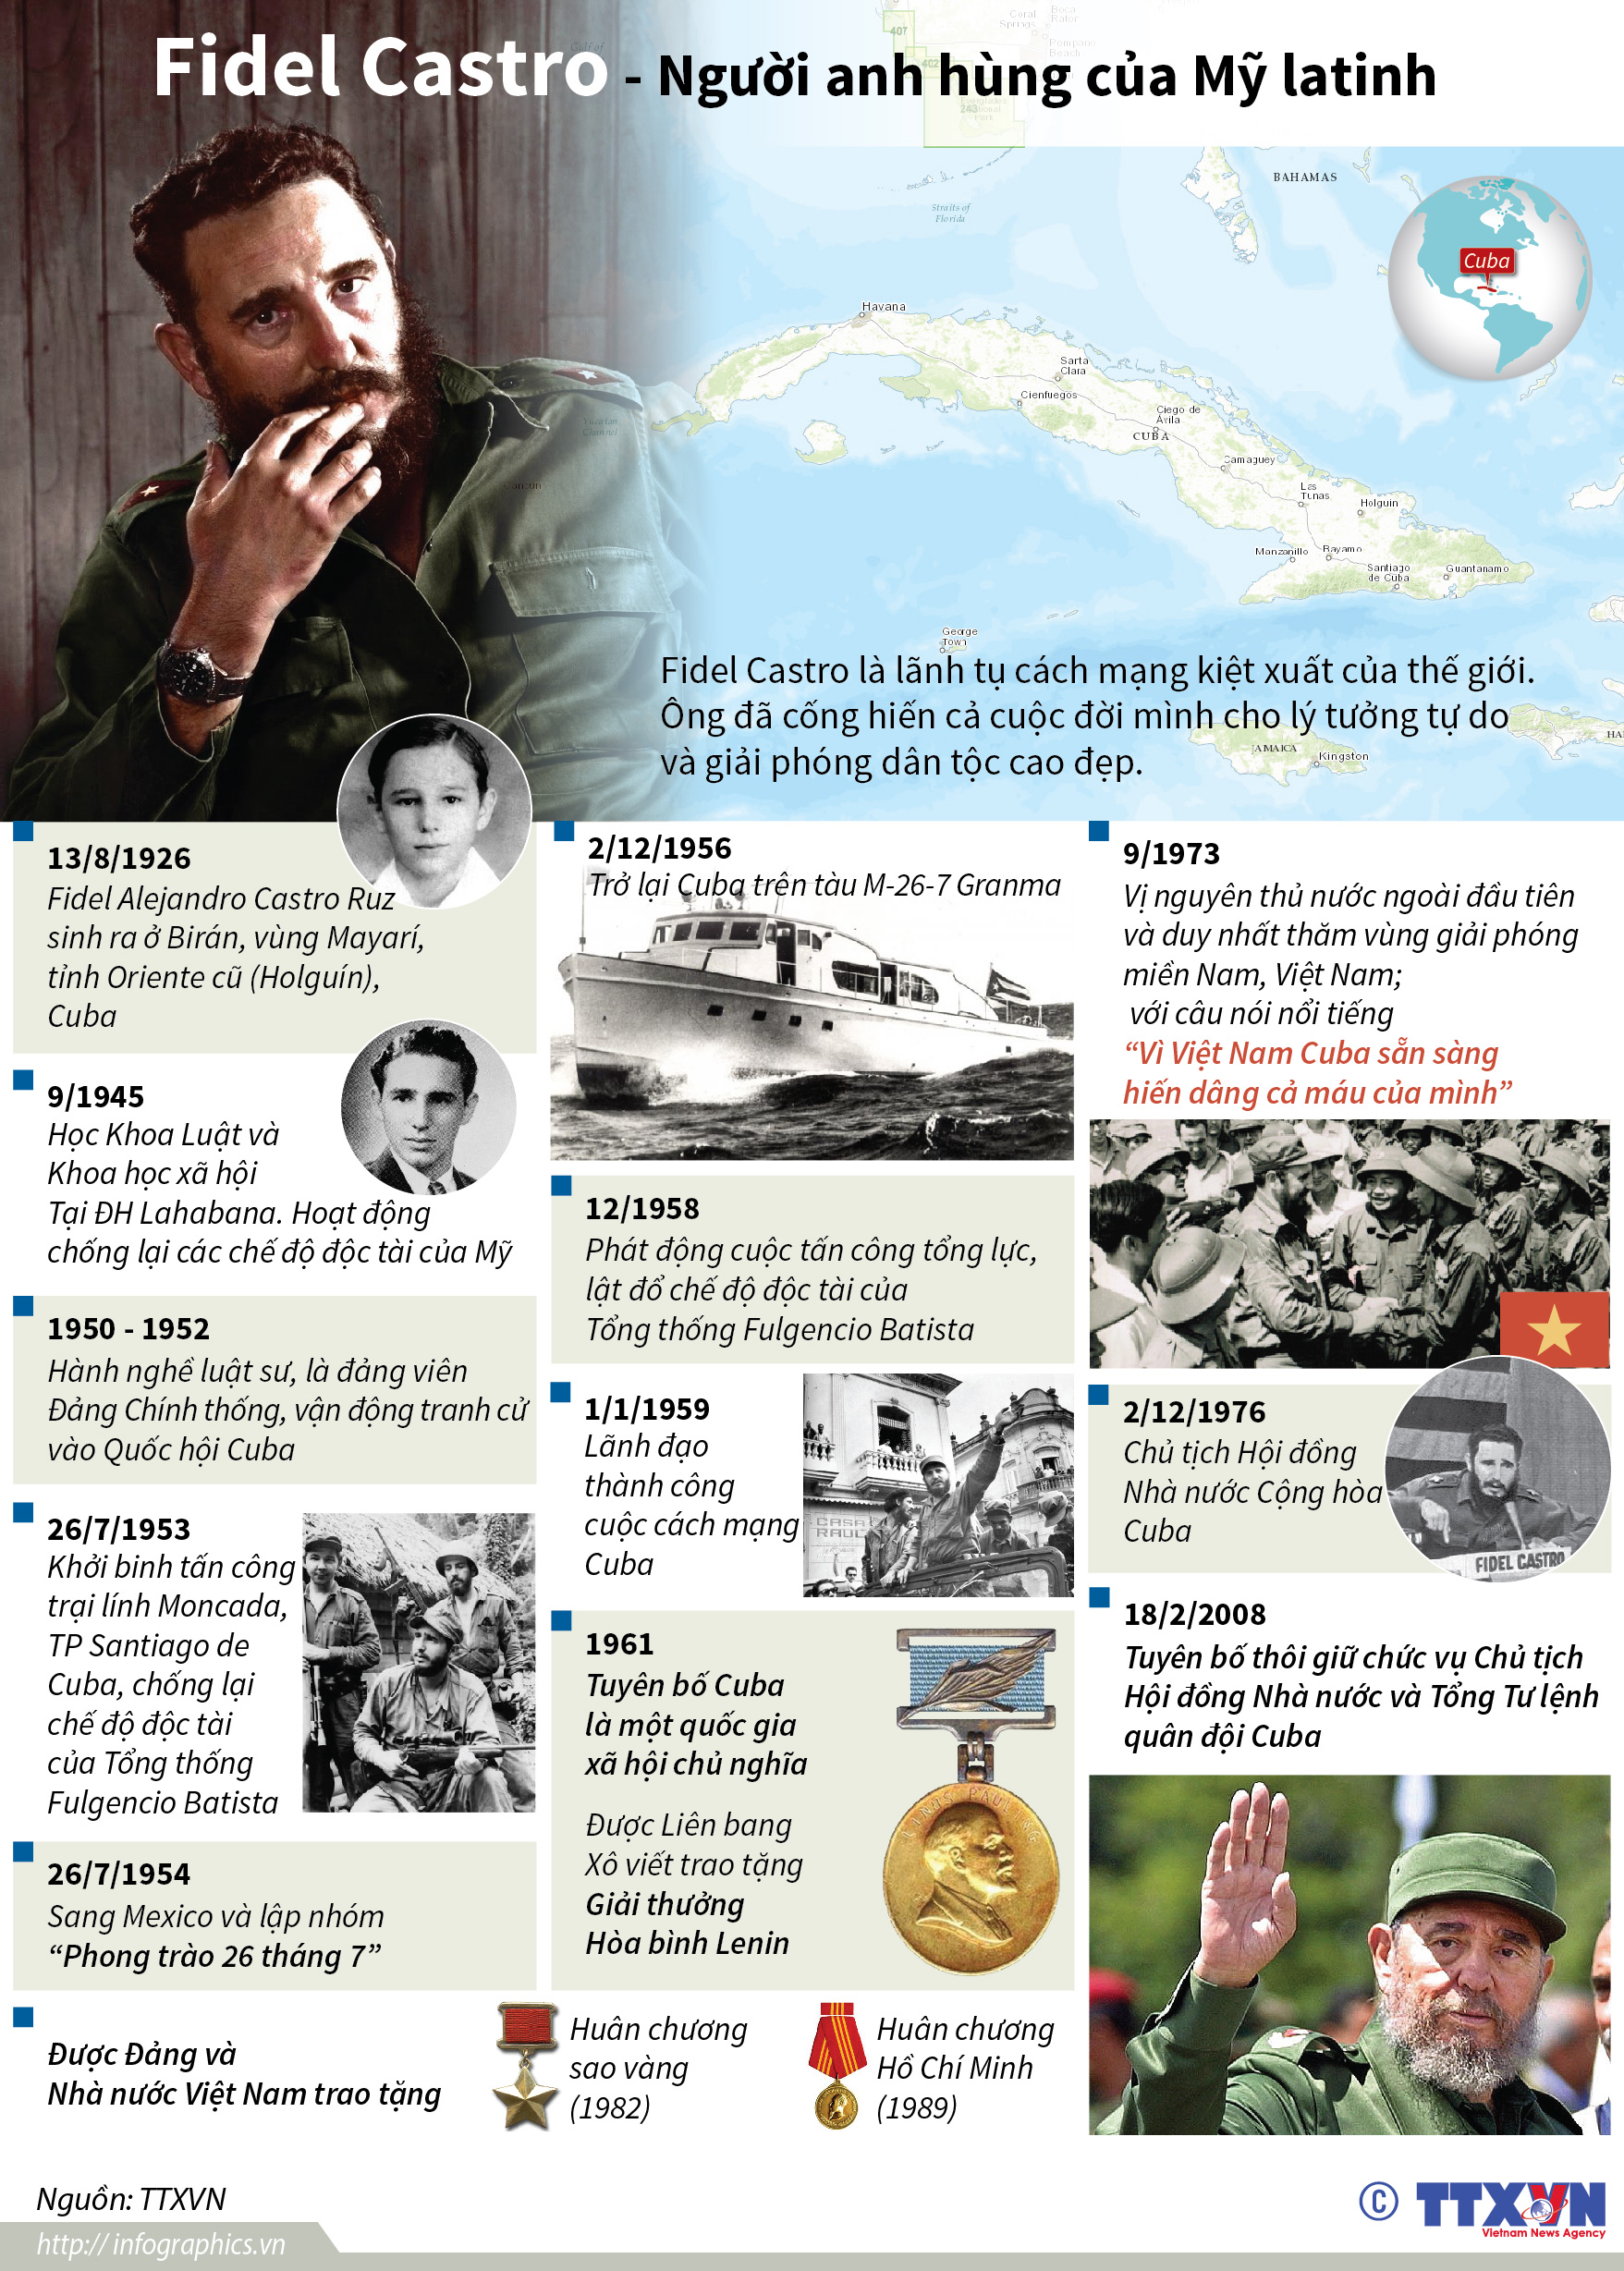 Đồ họa: Fidel Castro - Người anh hùng của Mỹ latinh